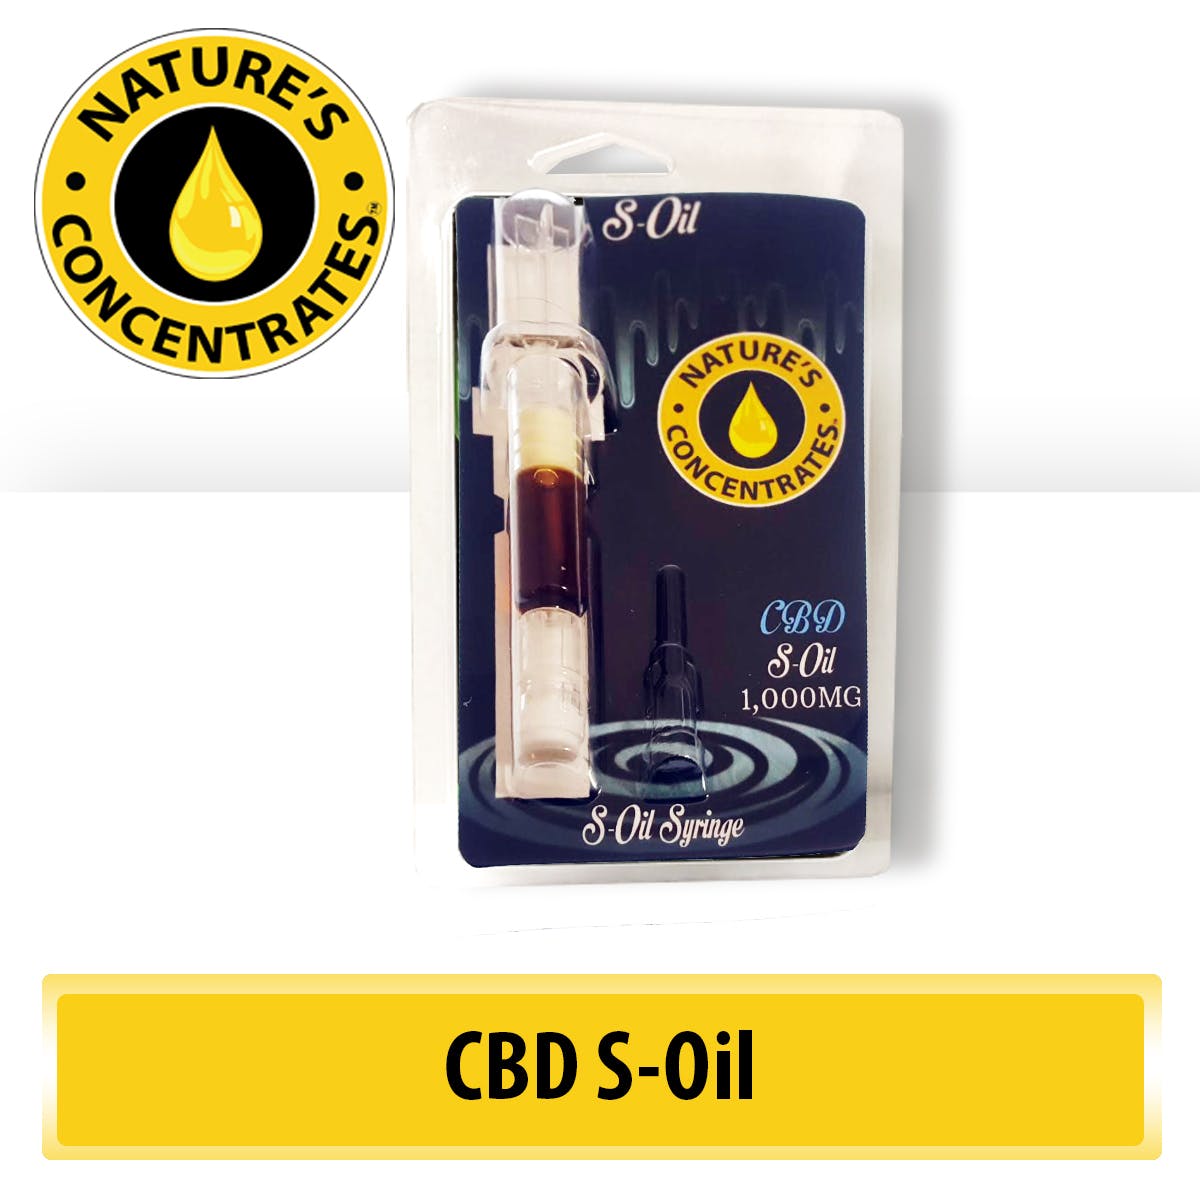 -Natures S-Oil (THC/CBD)